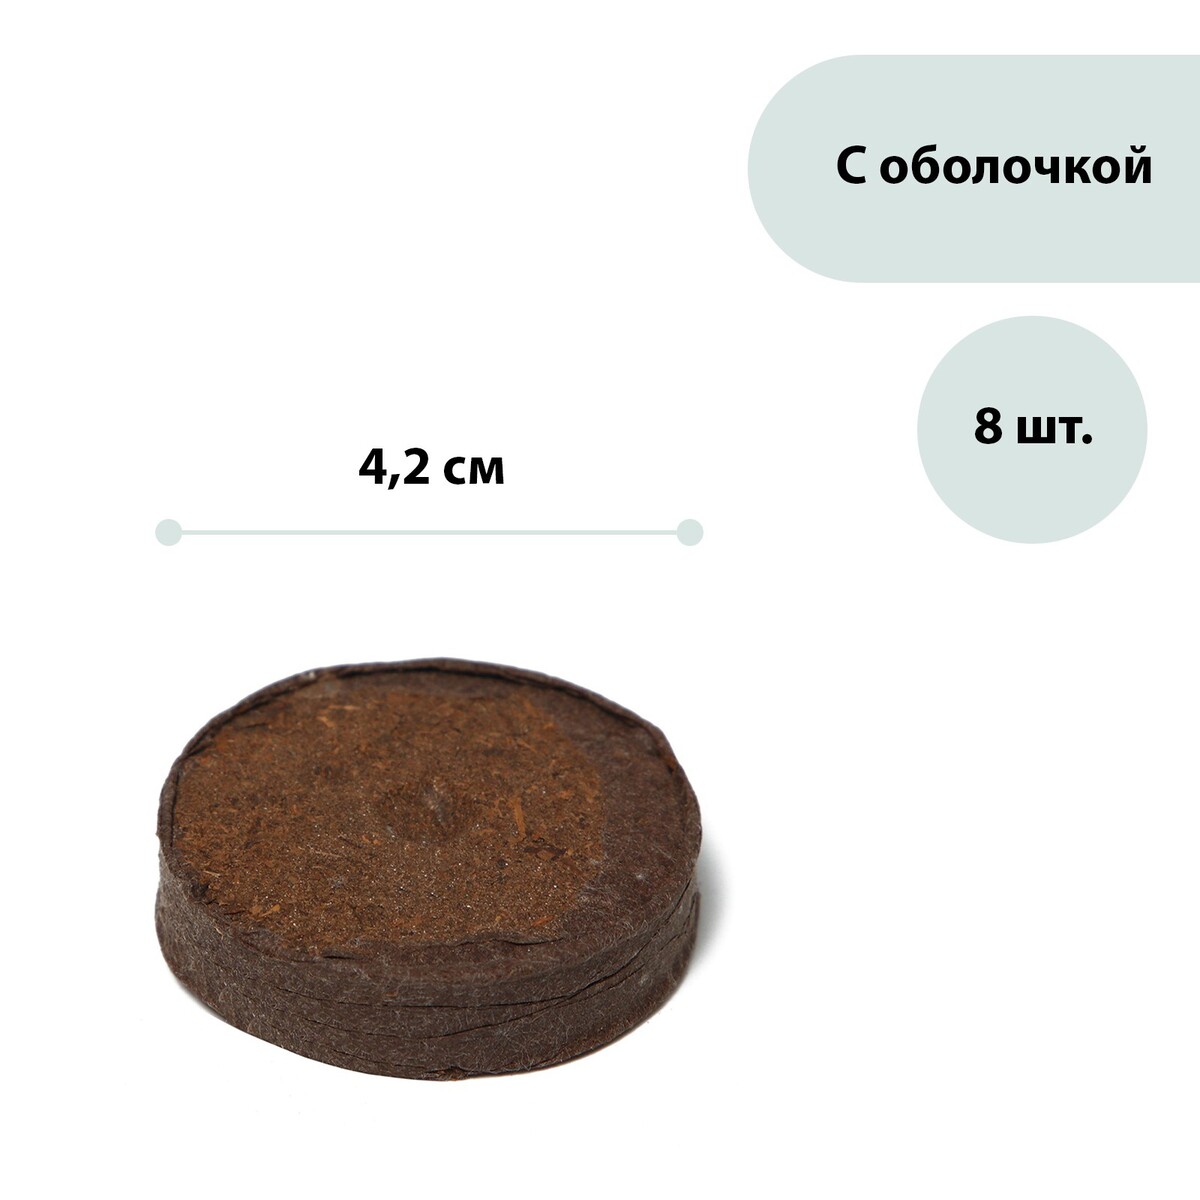 Таблетки торфяные, d = 4.2 см, с оболочкой, набор 8 шт. трихлор таблетки 250 г 0370 astralpool 34433 1 кг